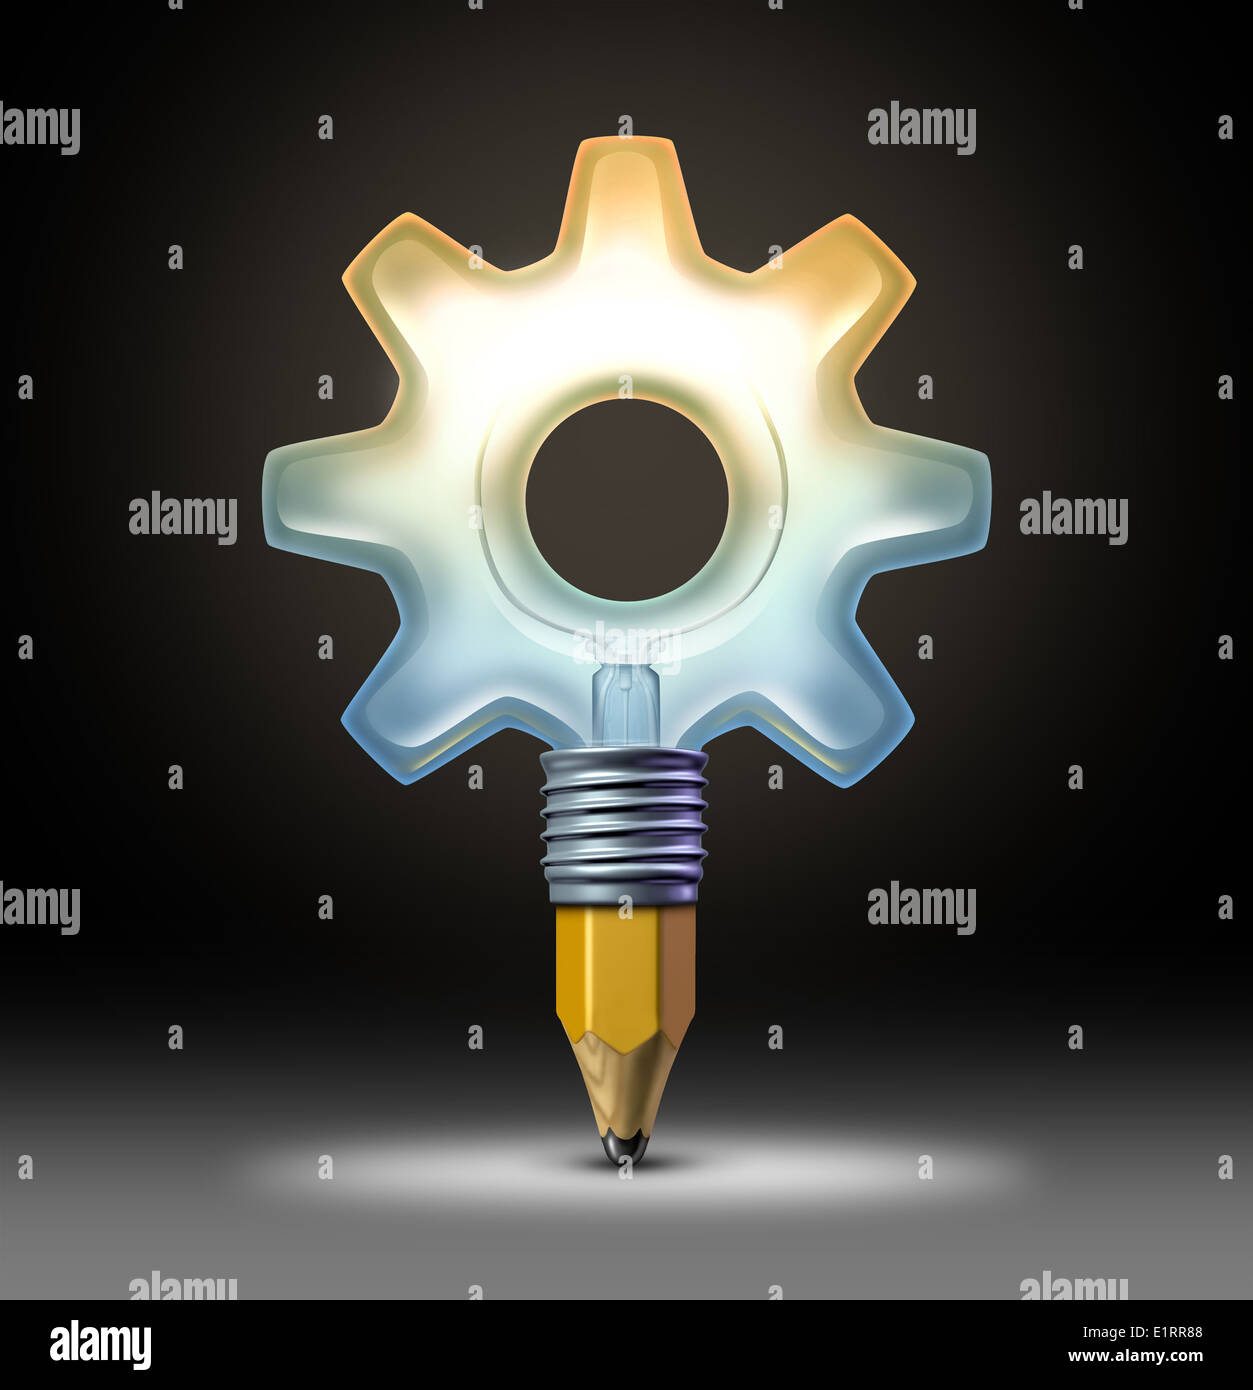 Business-Ideen-Konzept mit einer hell beleuchteten Glühbirne geformt wie ein Zahnrad oder Zahnrad mit einer Bleistiftspitze als Symbol und Symbol für das kreative Licht der Erfindung durch innovative Industrie-Design. Stockfoto